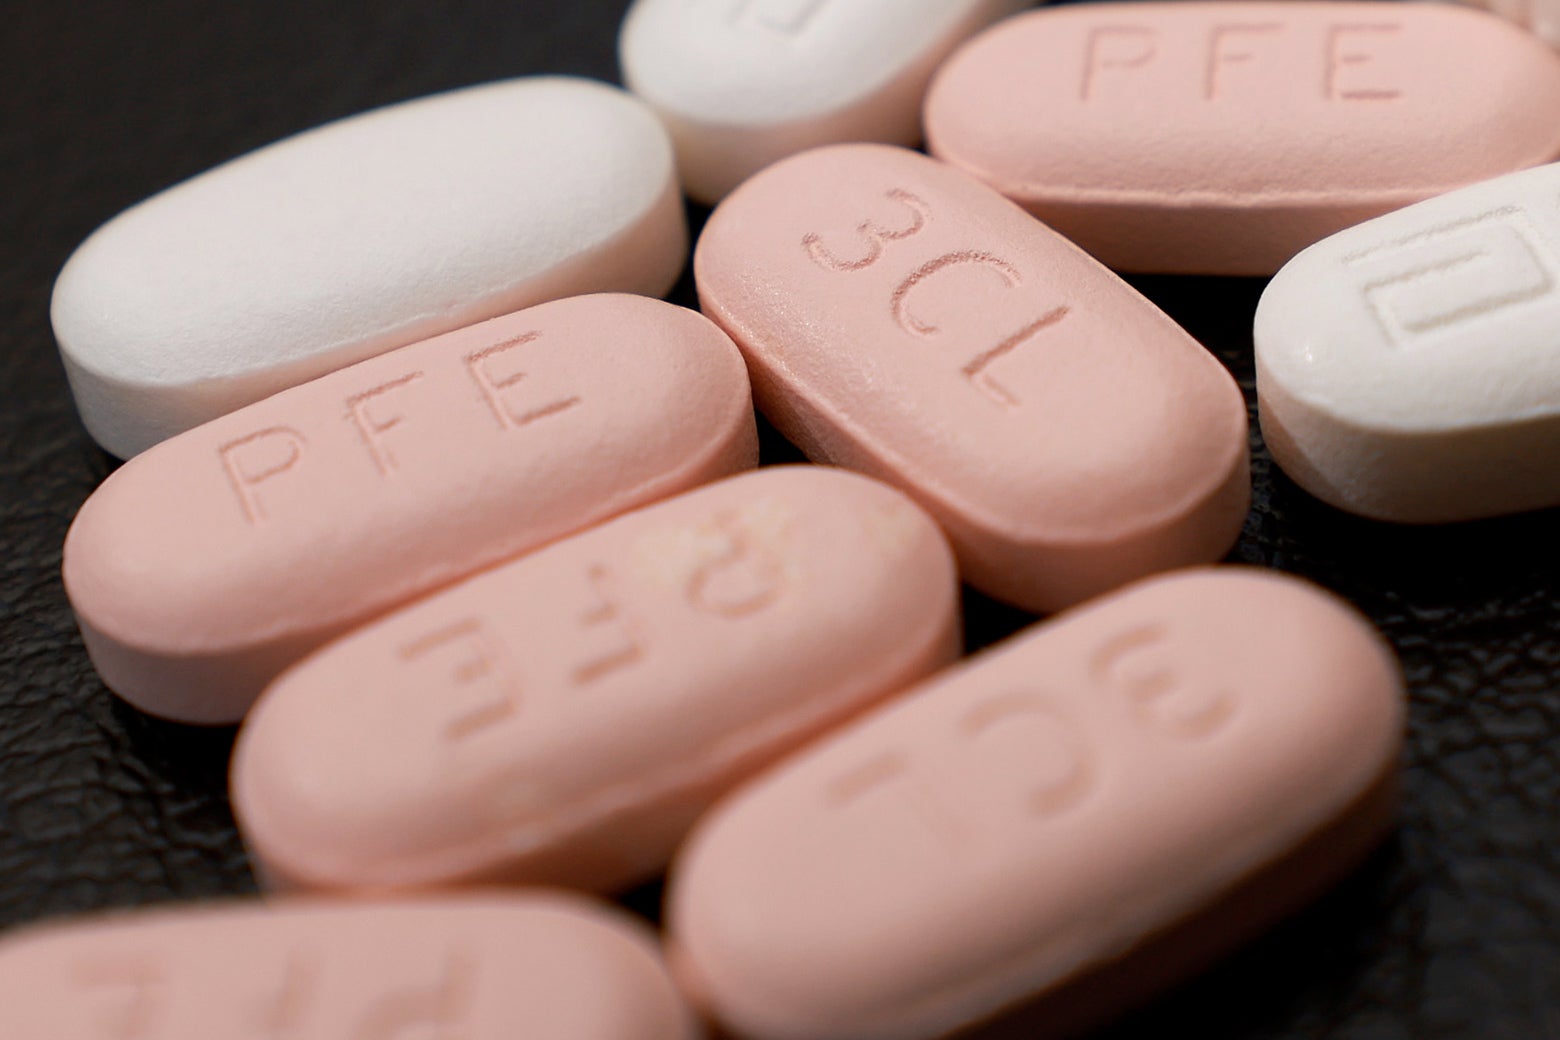 Close up of pink and white Paxlovid pills